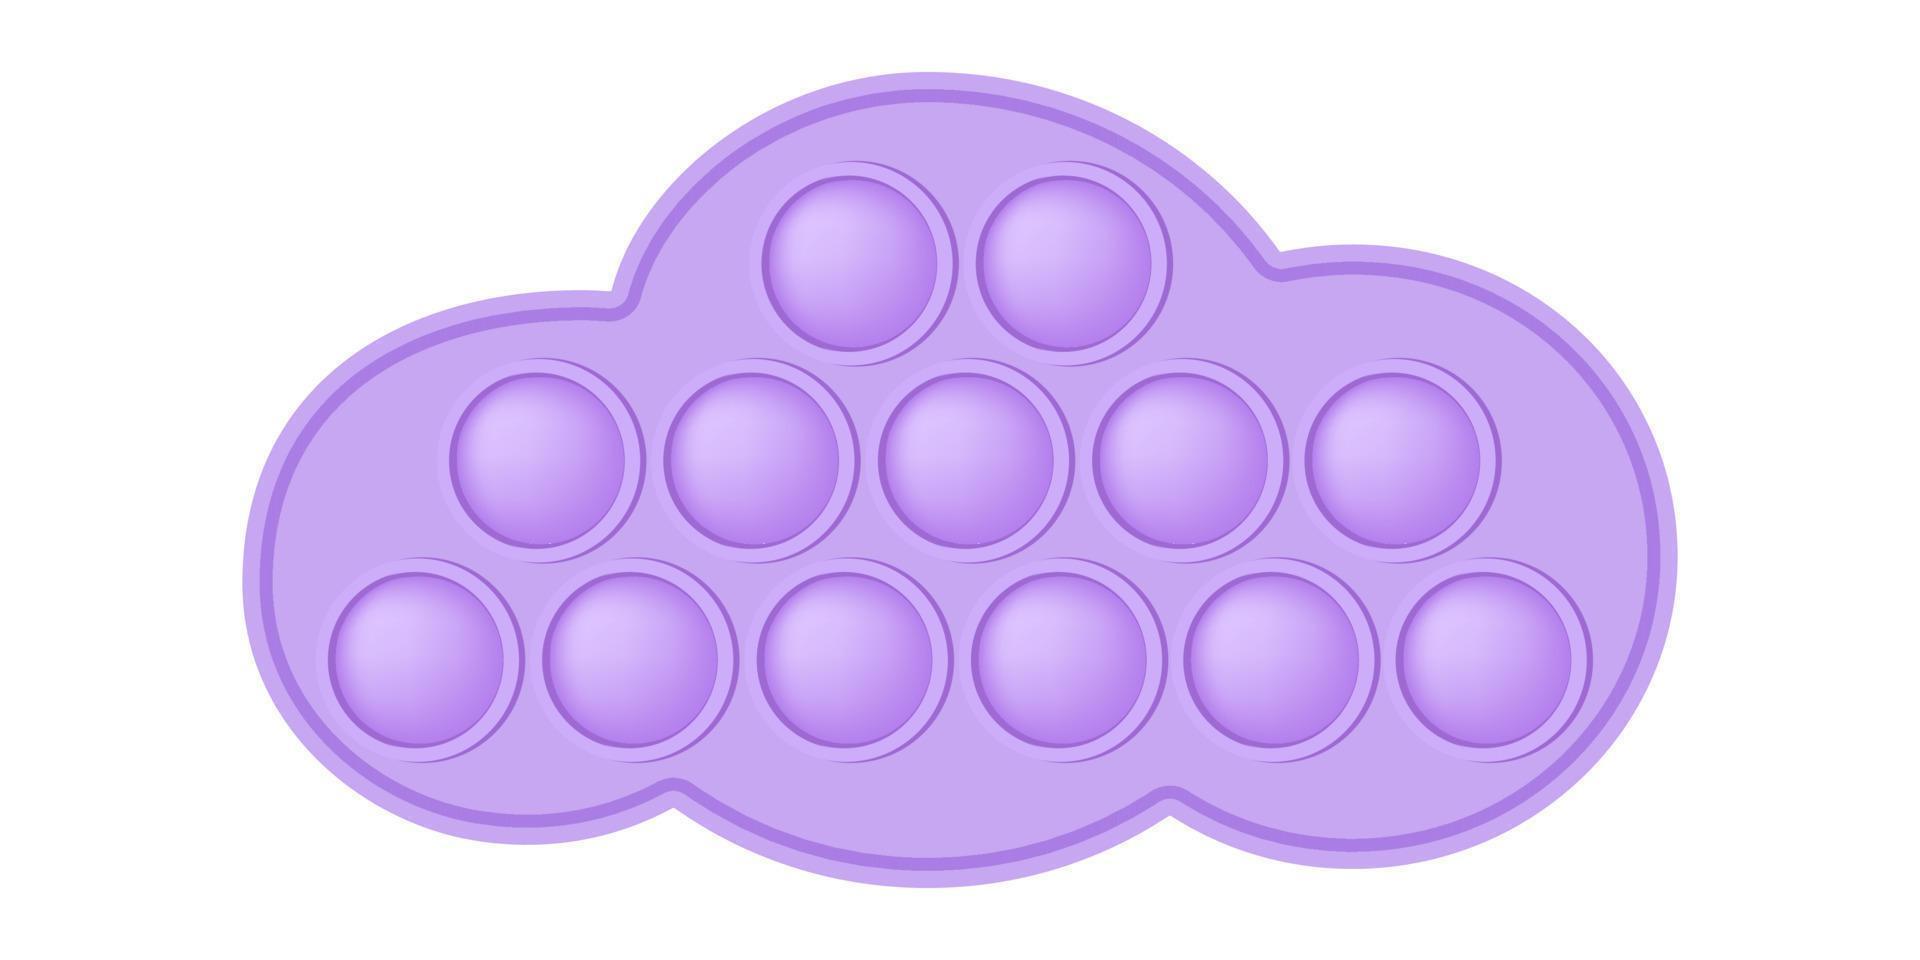 knallendes spielzeug lila wolke silikonspielzeug für zappel. süchtig machendes Anti-Stress-Spielzeug in pastellrosa Farbe. Bubble sensorisches Entwicklungsspielzeug für Kinderfinger. vektorillustration isoliert vektor